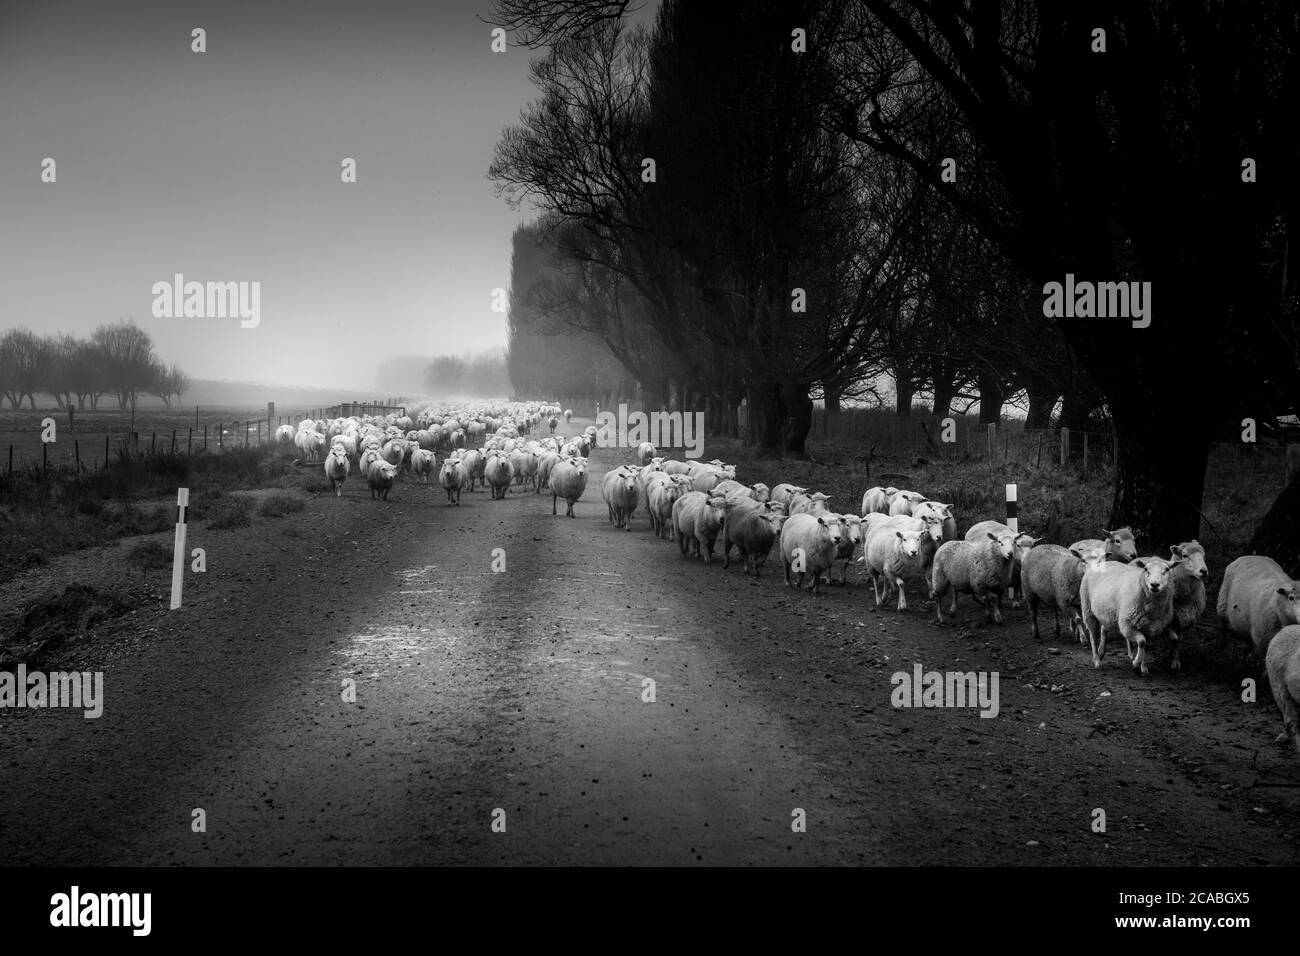 Image en noir et blanc d'un troupeau de moutons en train d'être rassemblé sur une route rurale Mt Aspiring Station, Nouvelle-Zélande Banque D'Images